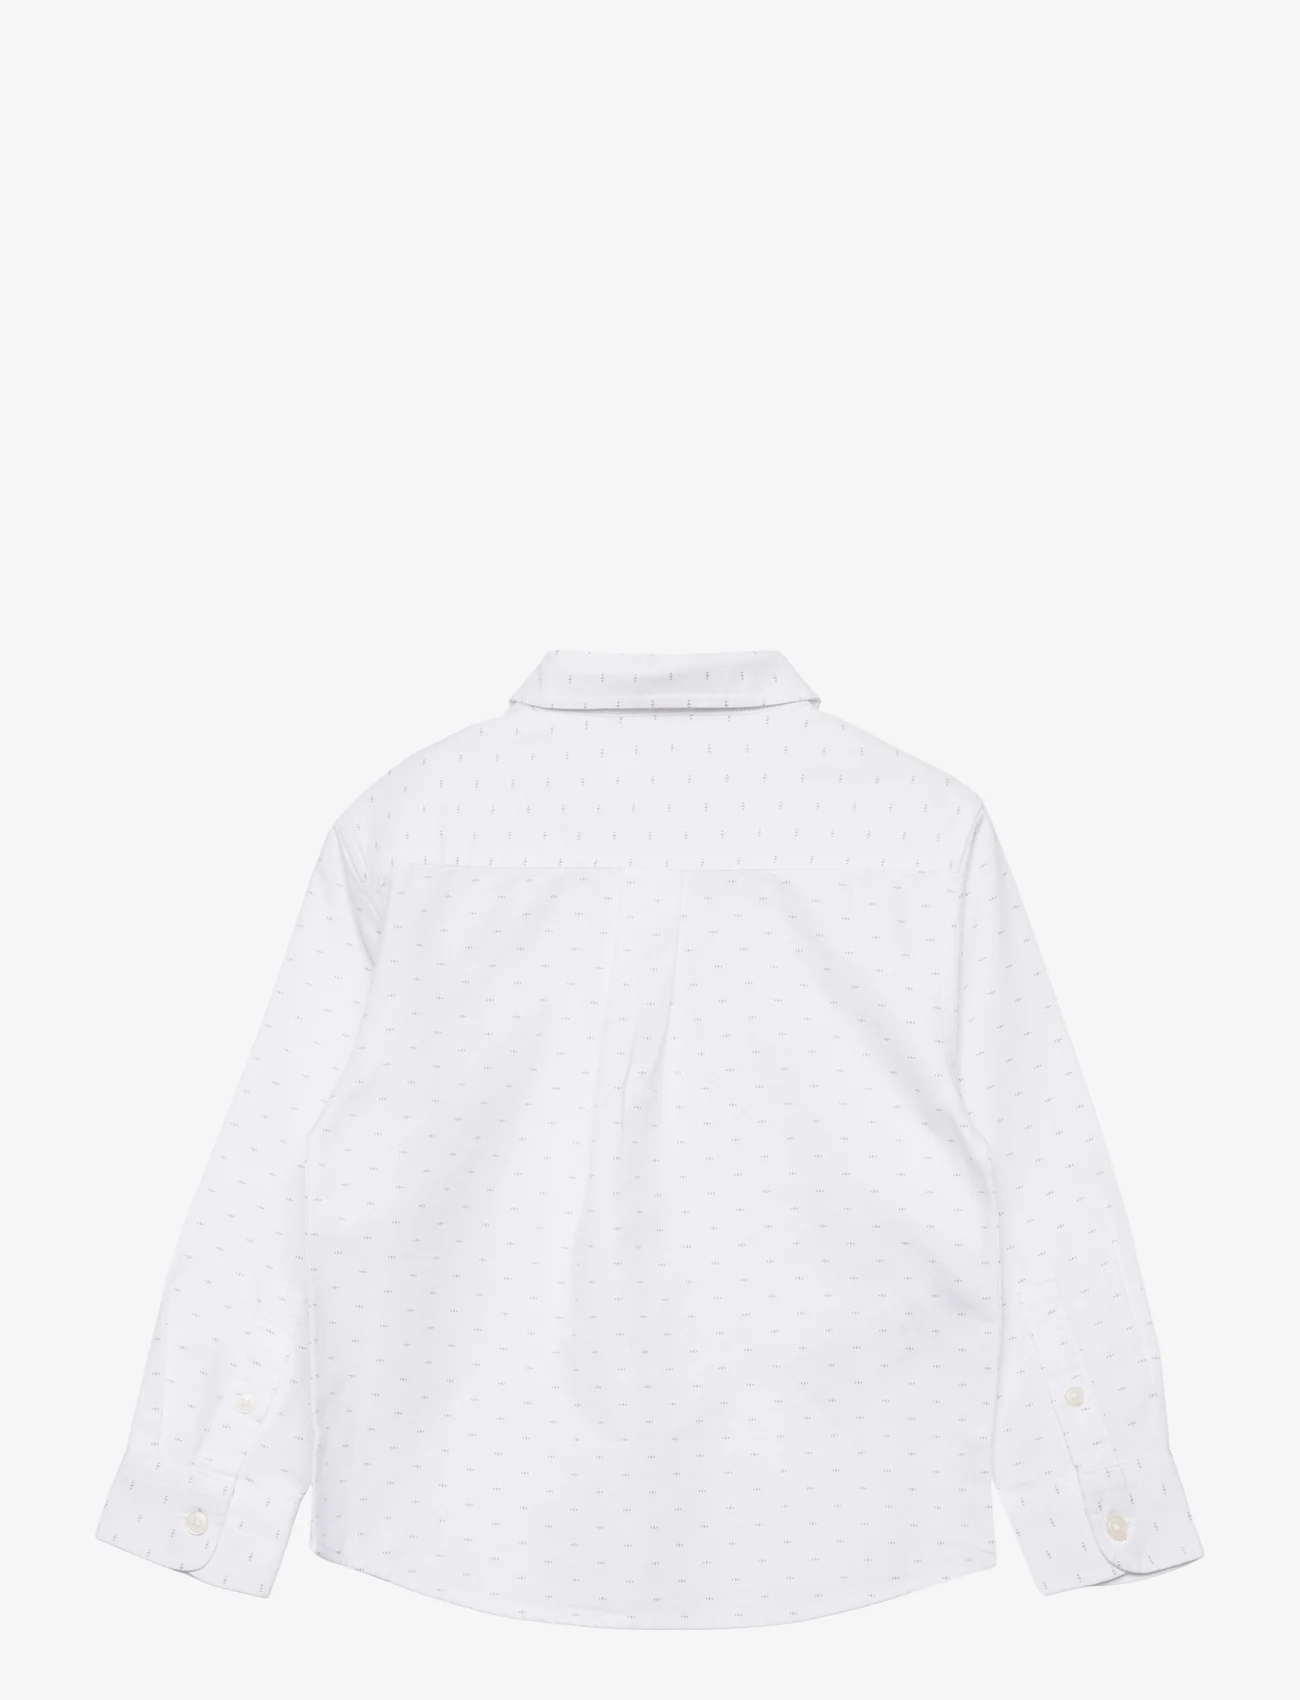 Mango - Printed cotton shirt - langermede skjorter - white - 1